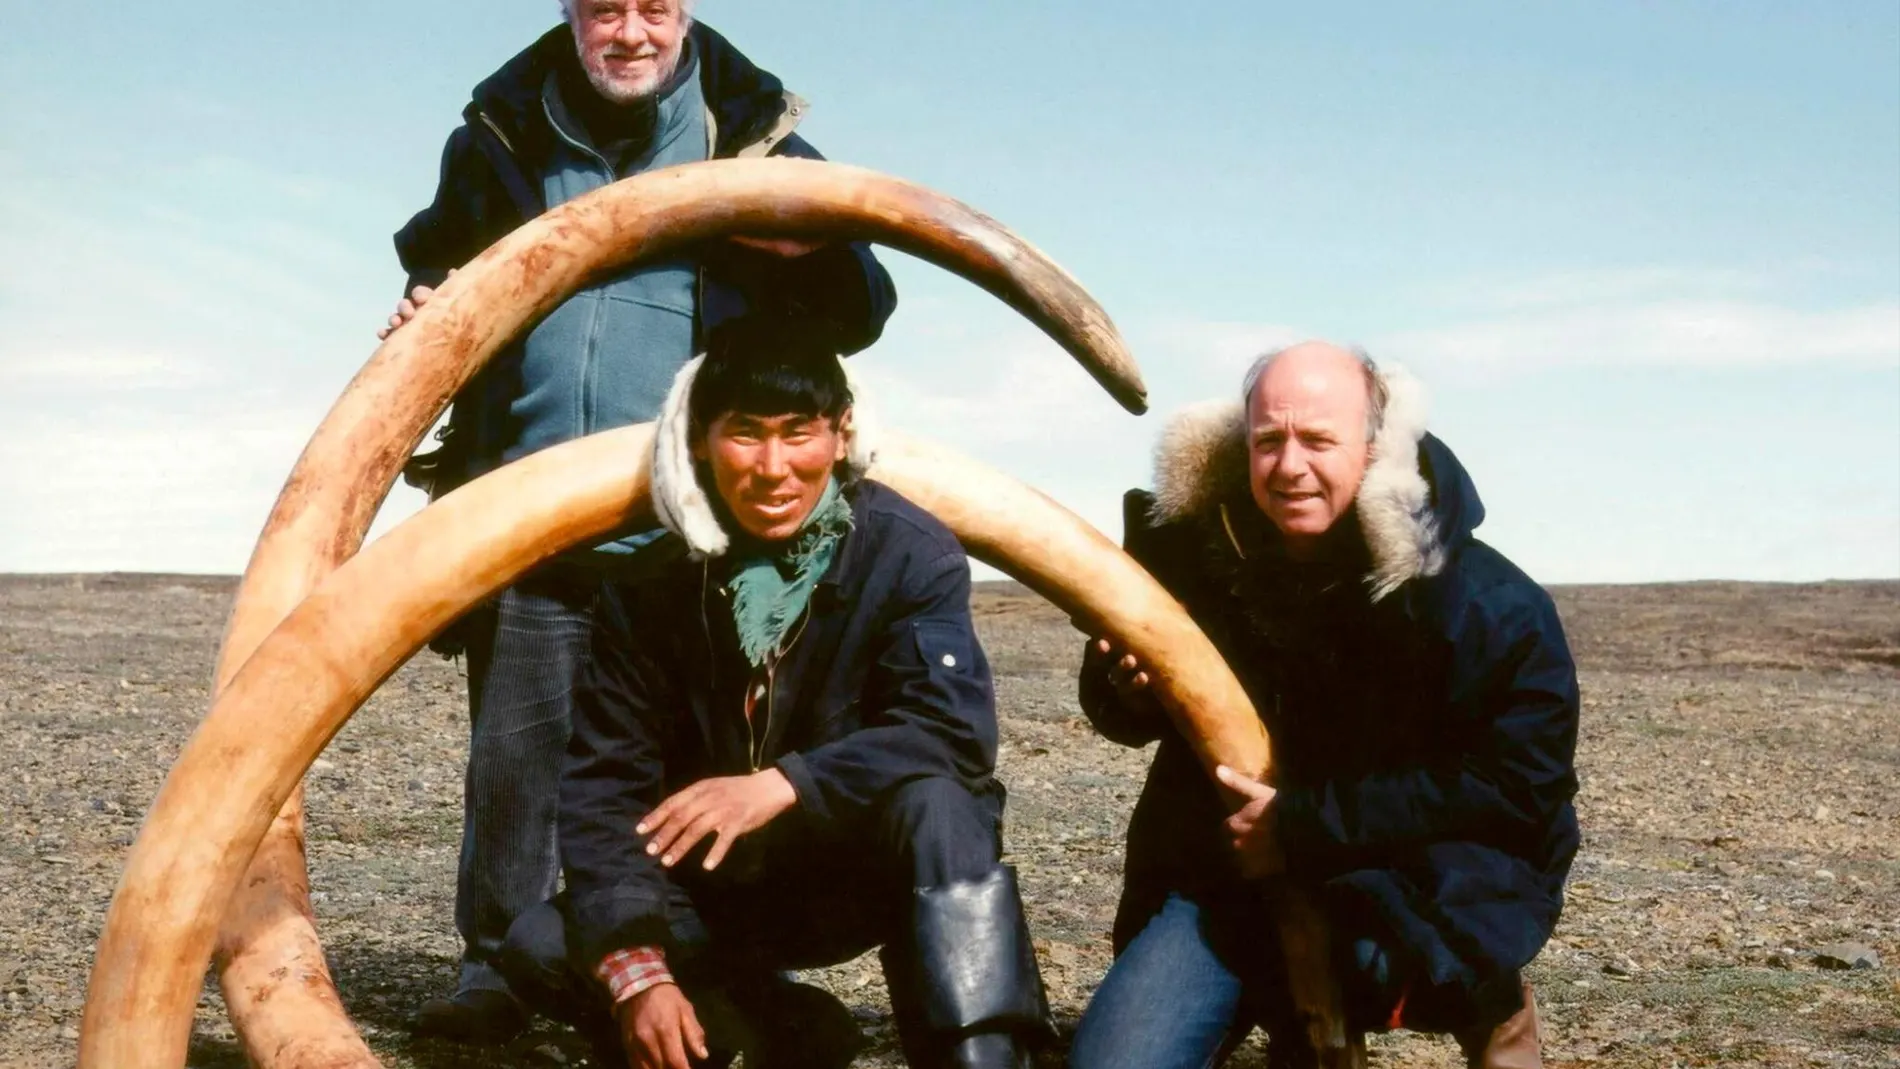 El mamut lleva extinto desde hace 10.000 años